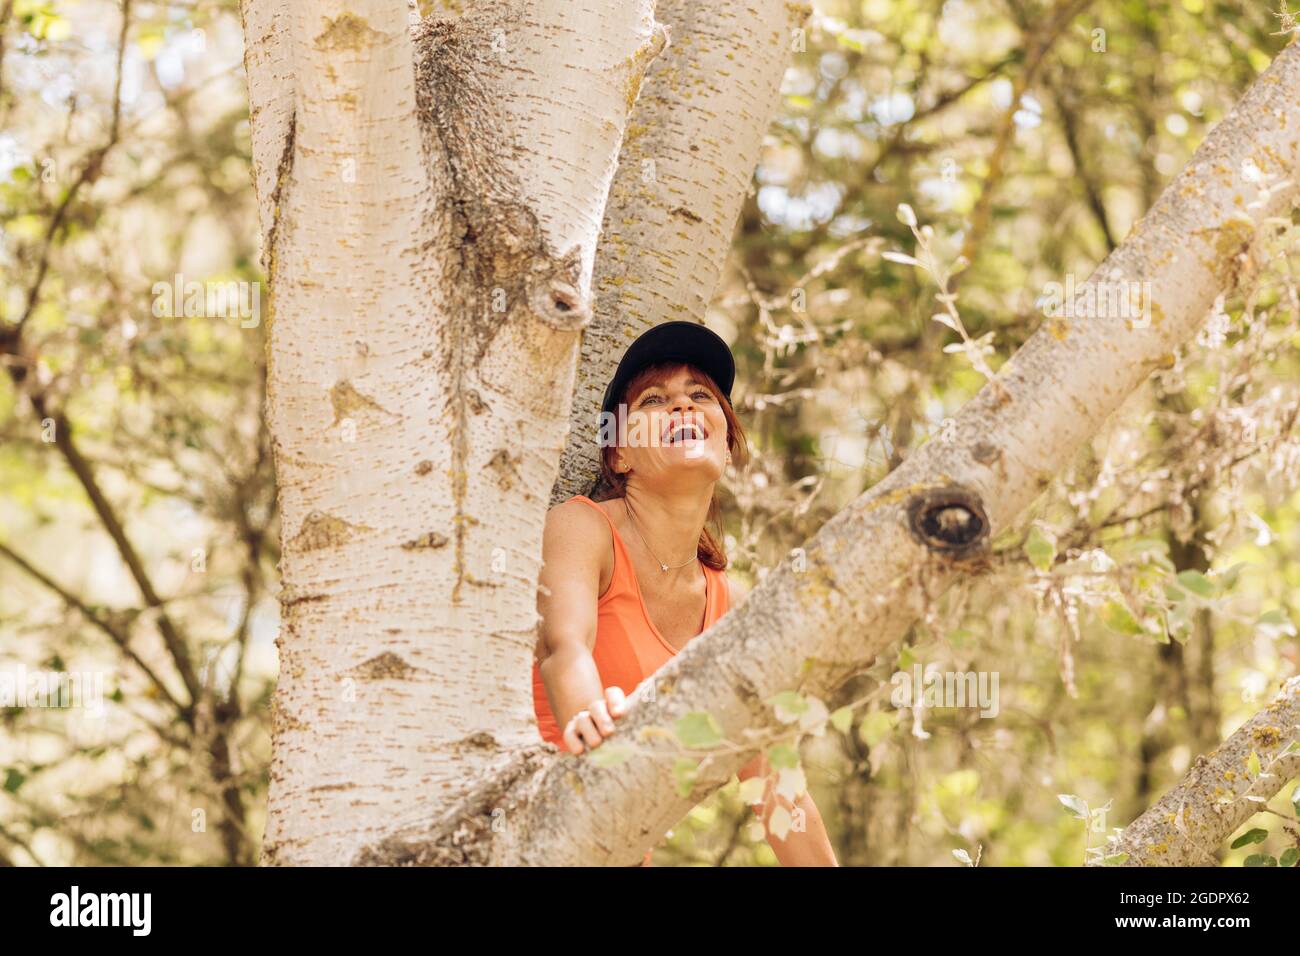 Femme assise dans un arbre en riant avec une expression heureuse Banque D'Images